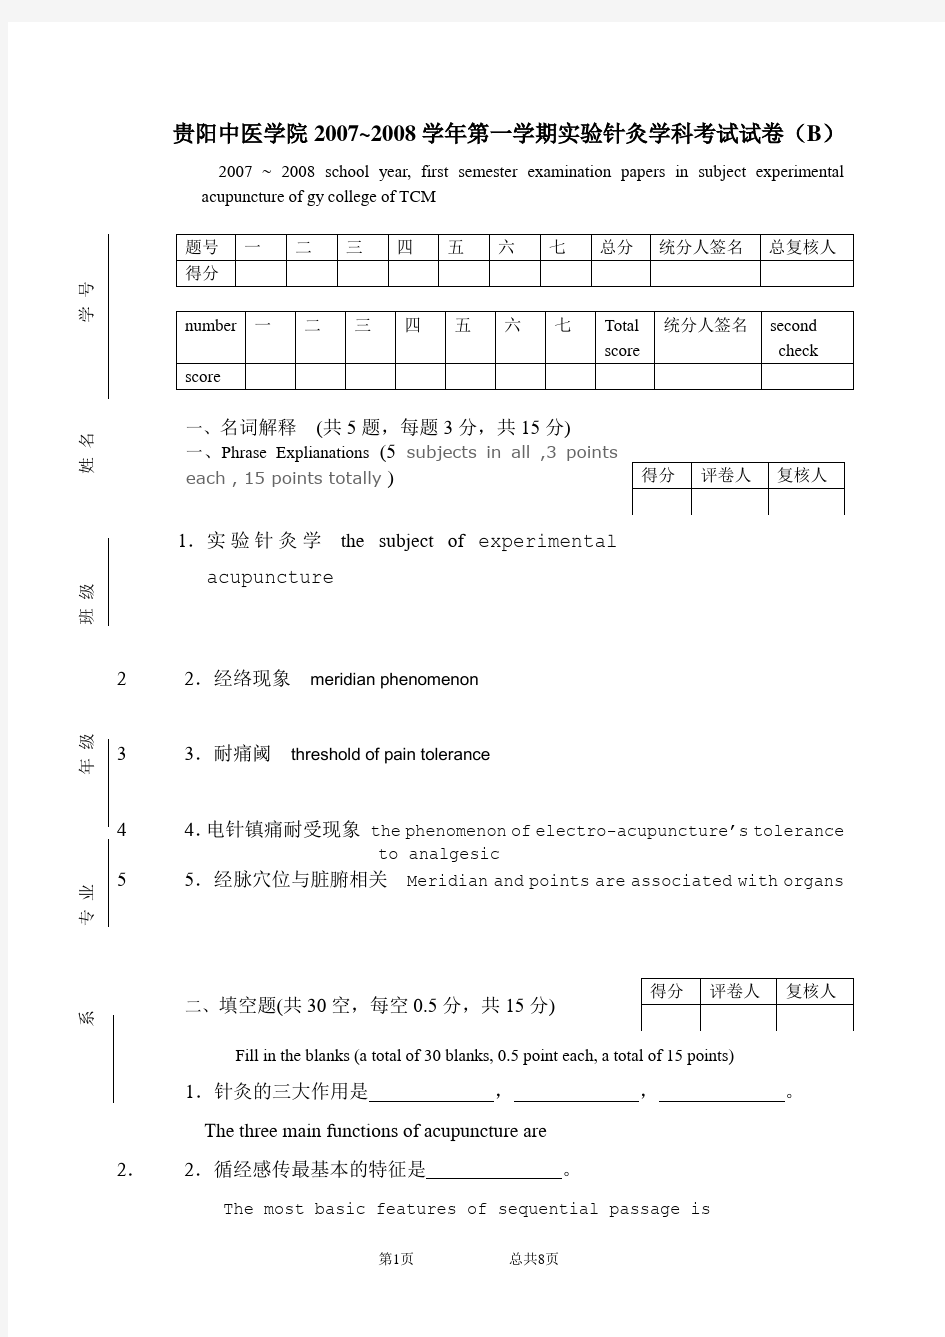 贵阳中医学院2007~2008学年第一学期实验针灸学科考试试卷